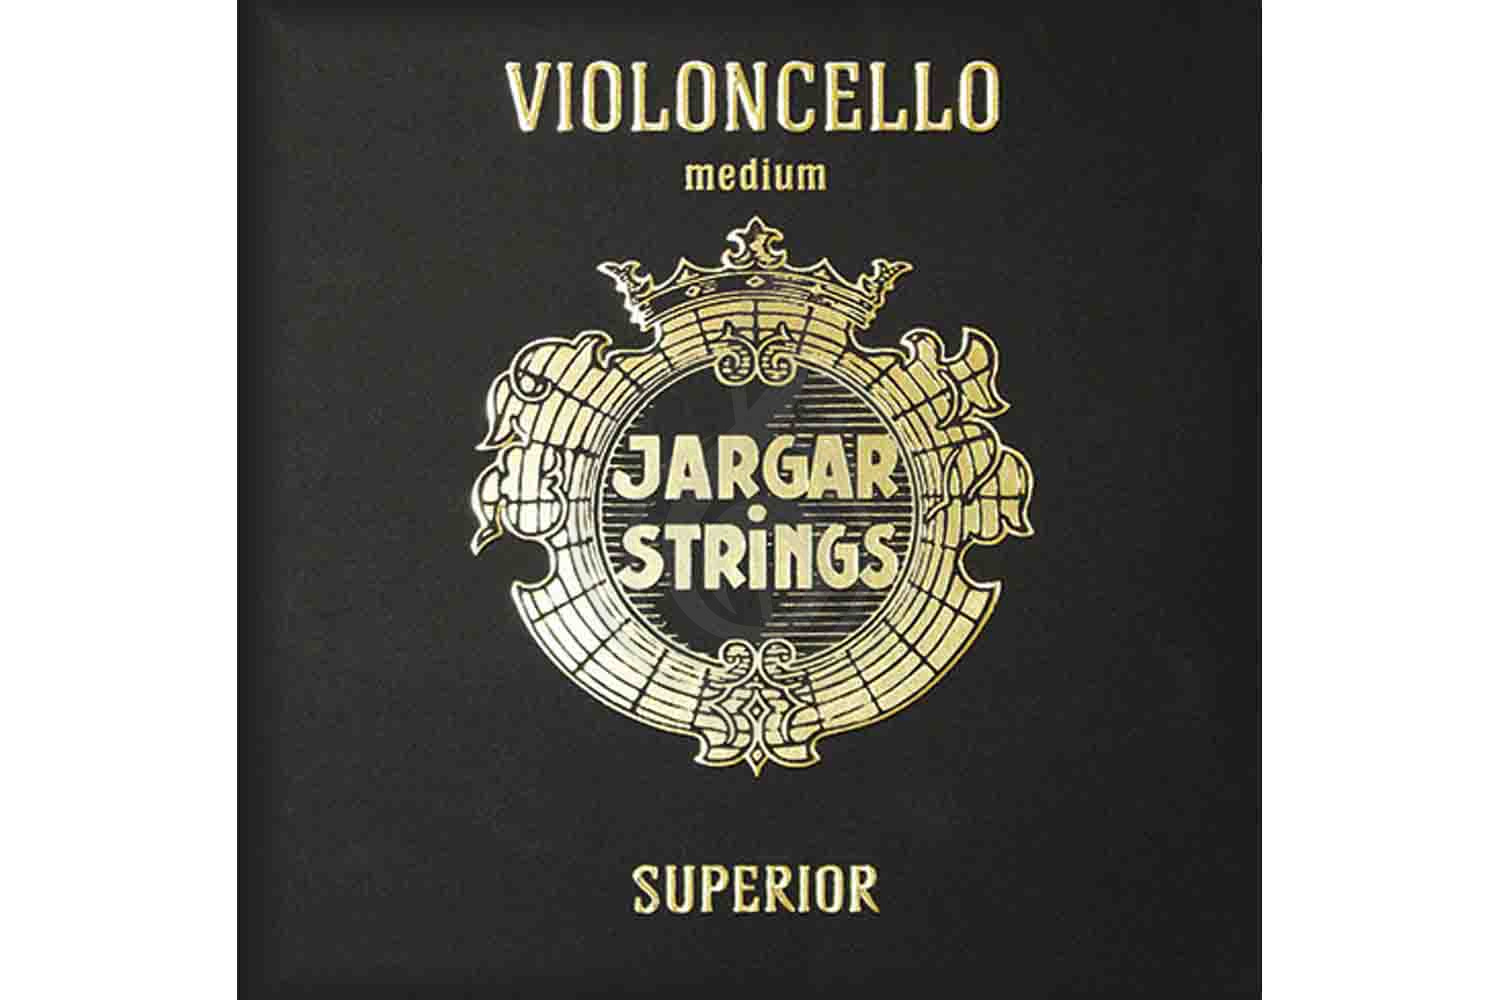 Струны для виолончели Jargar Strings Cello-G-Superior - Отдельная струна G/Соль для виолончели 4/4, среднее натяжение, Jargar Strings Cello-G-Superior в магазине DominantaMusic - фото 1